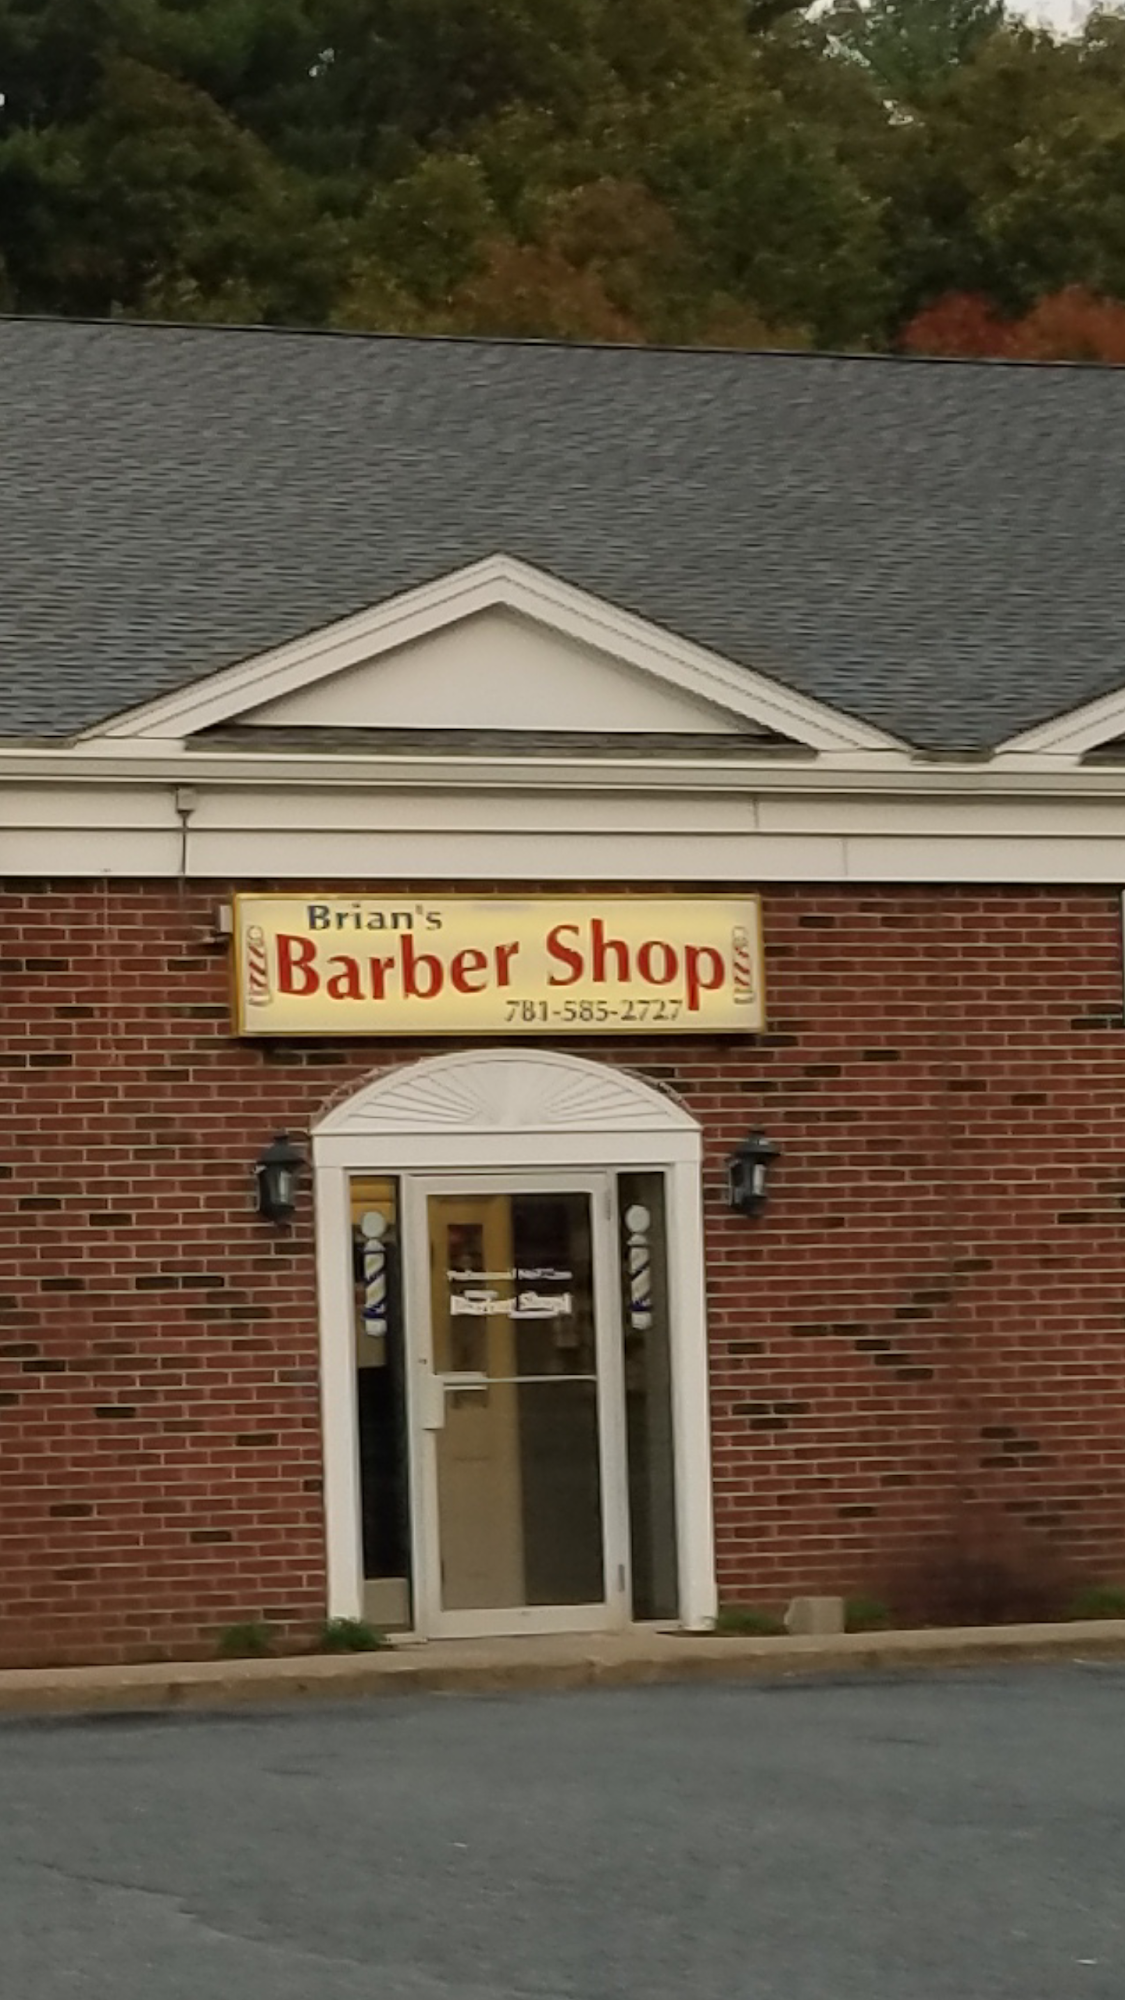 Brian's Barber Shop 179 Summer St, Kingston Massachusetts 02364